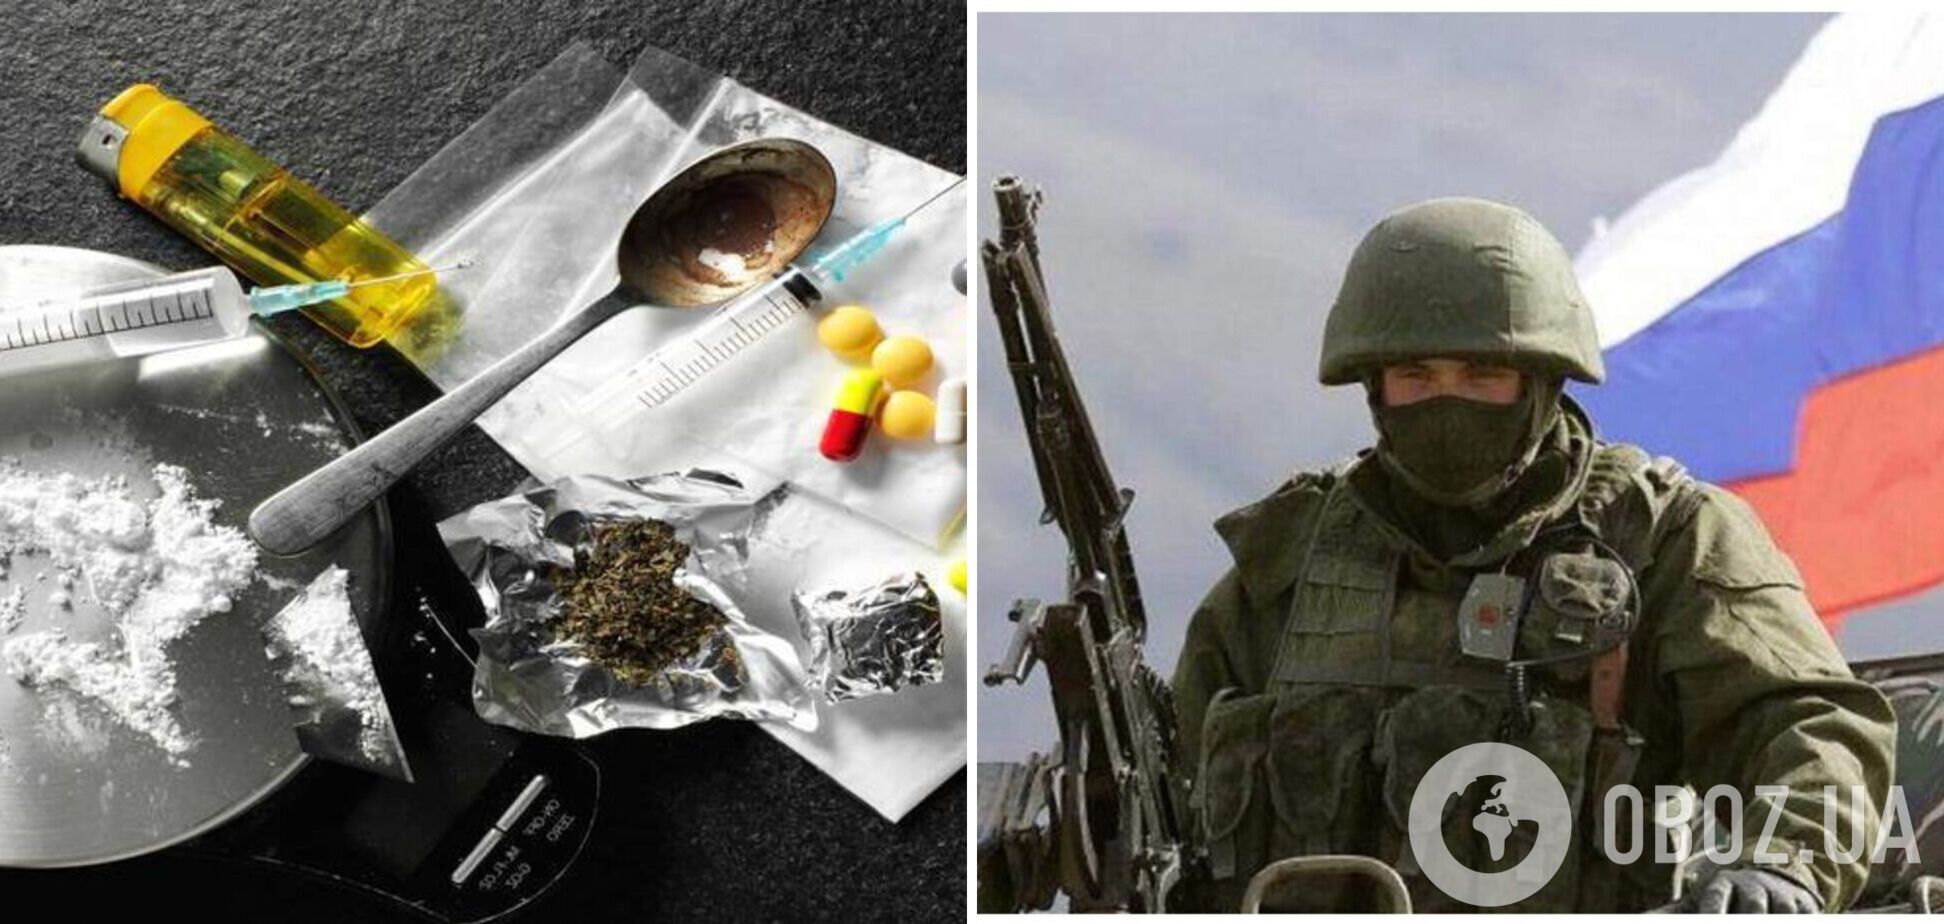 Среди российских оккупантов в Украине есть наркоманы: СБУ обнародовала перехват разговора